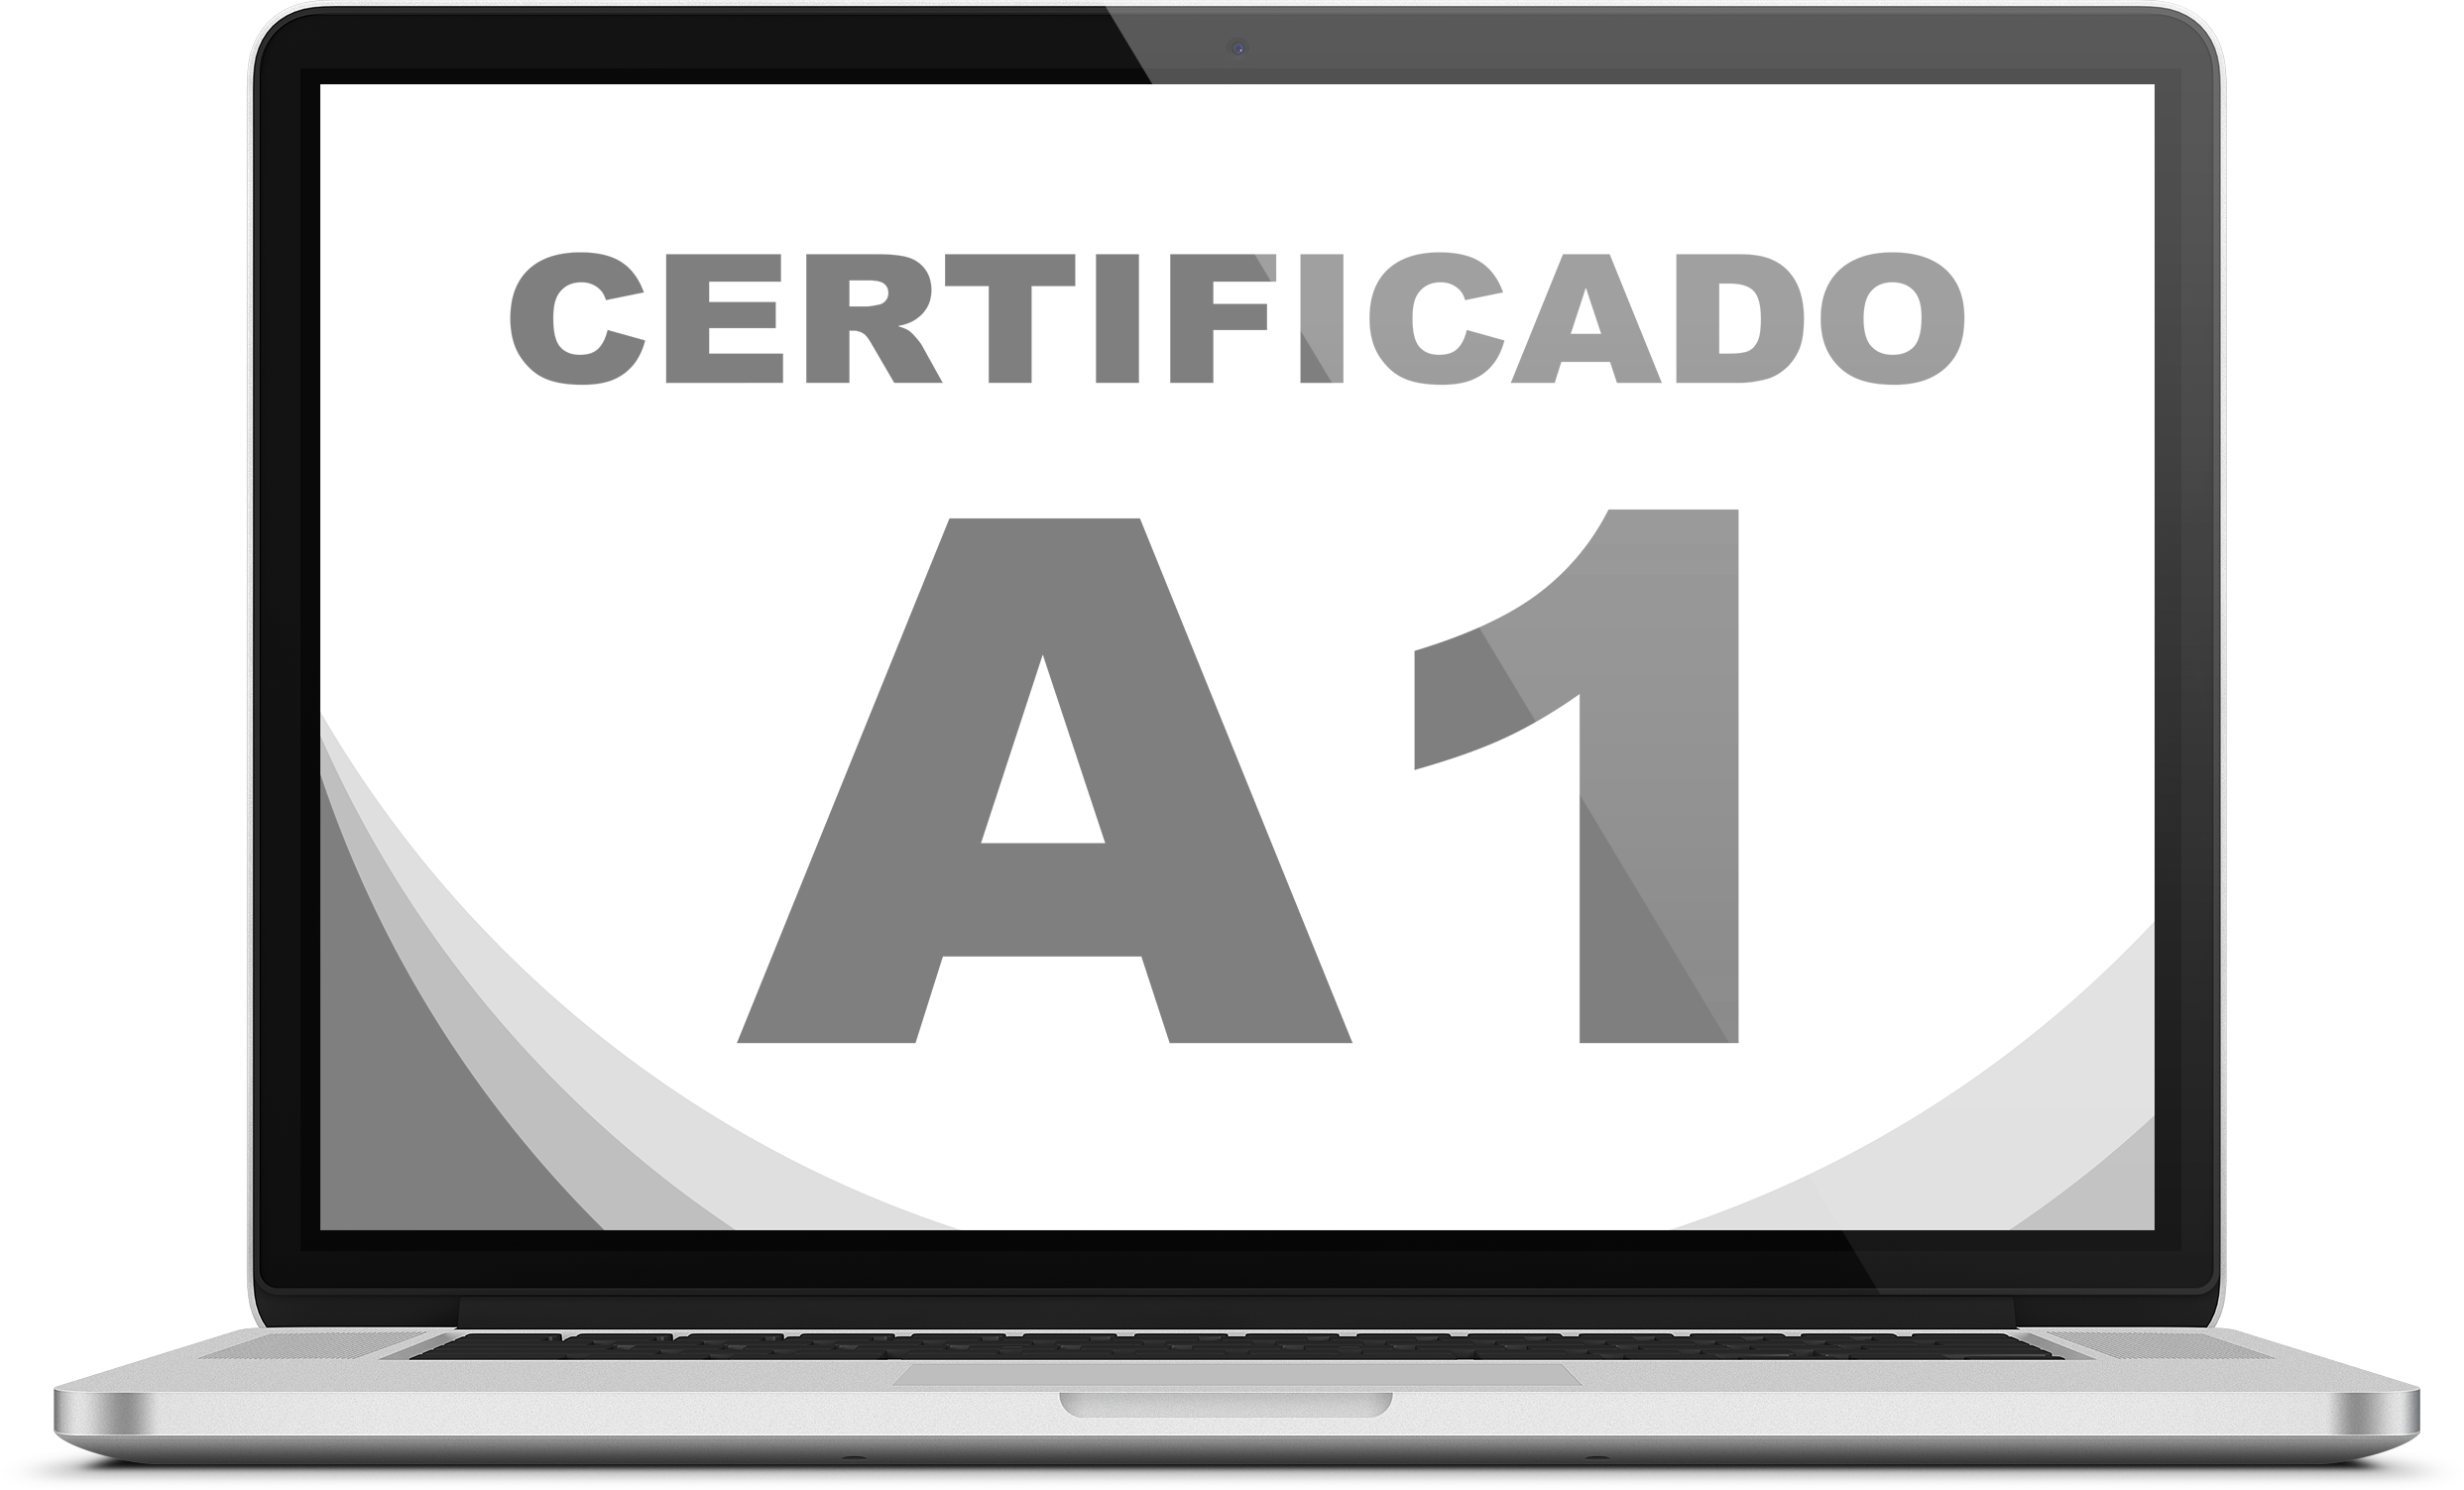 Icone de certificado A1